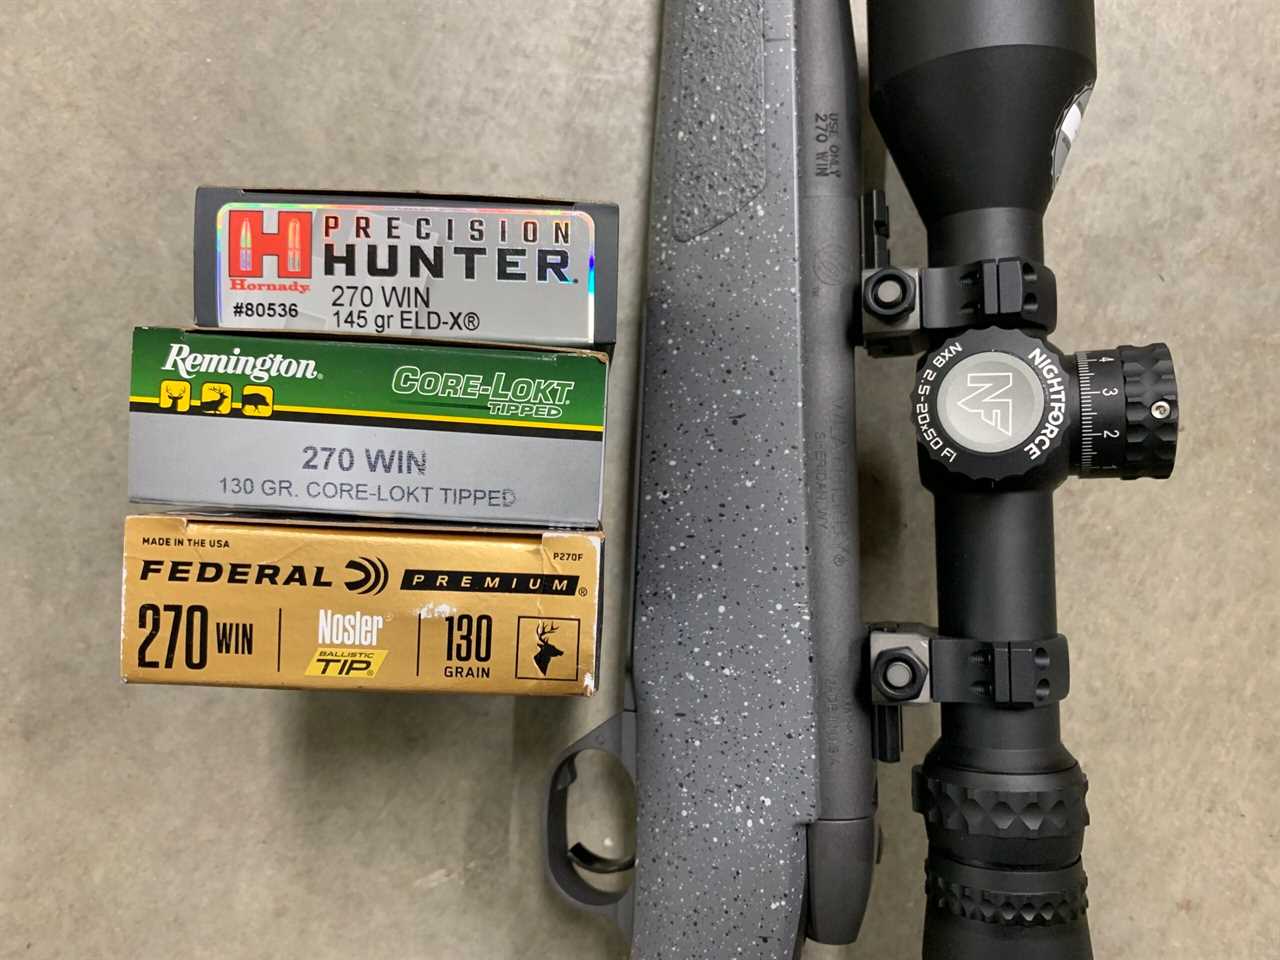 .270 ammo for Mark V Hunter